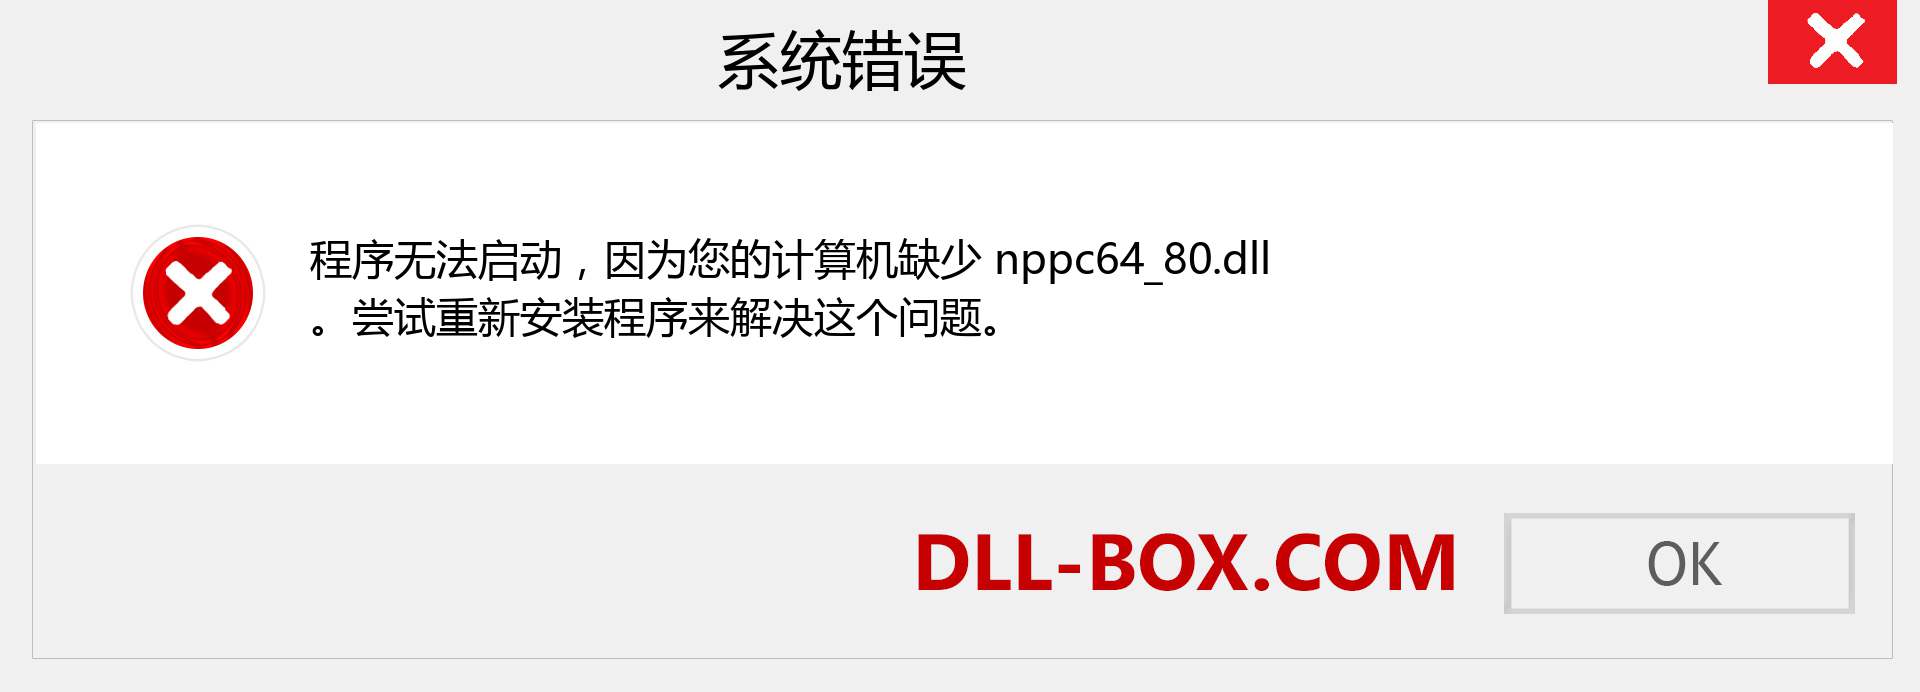 nppc64_80.dll 文件丢失？。 适用于 Windows 7、8、10 的下载 - 修复 Windows、照片、图像上的 nppc64_80 dll 丢失错误